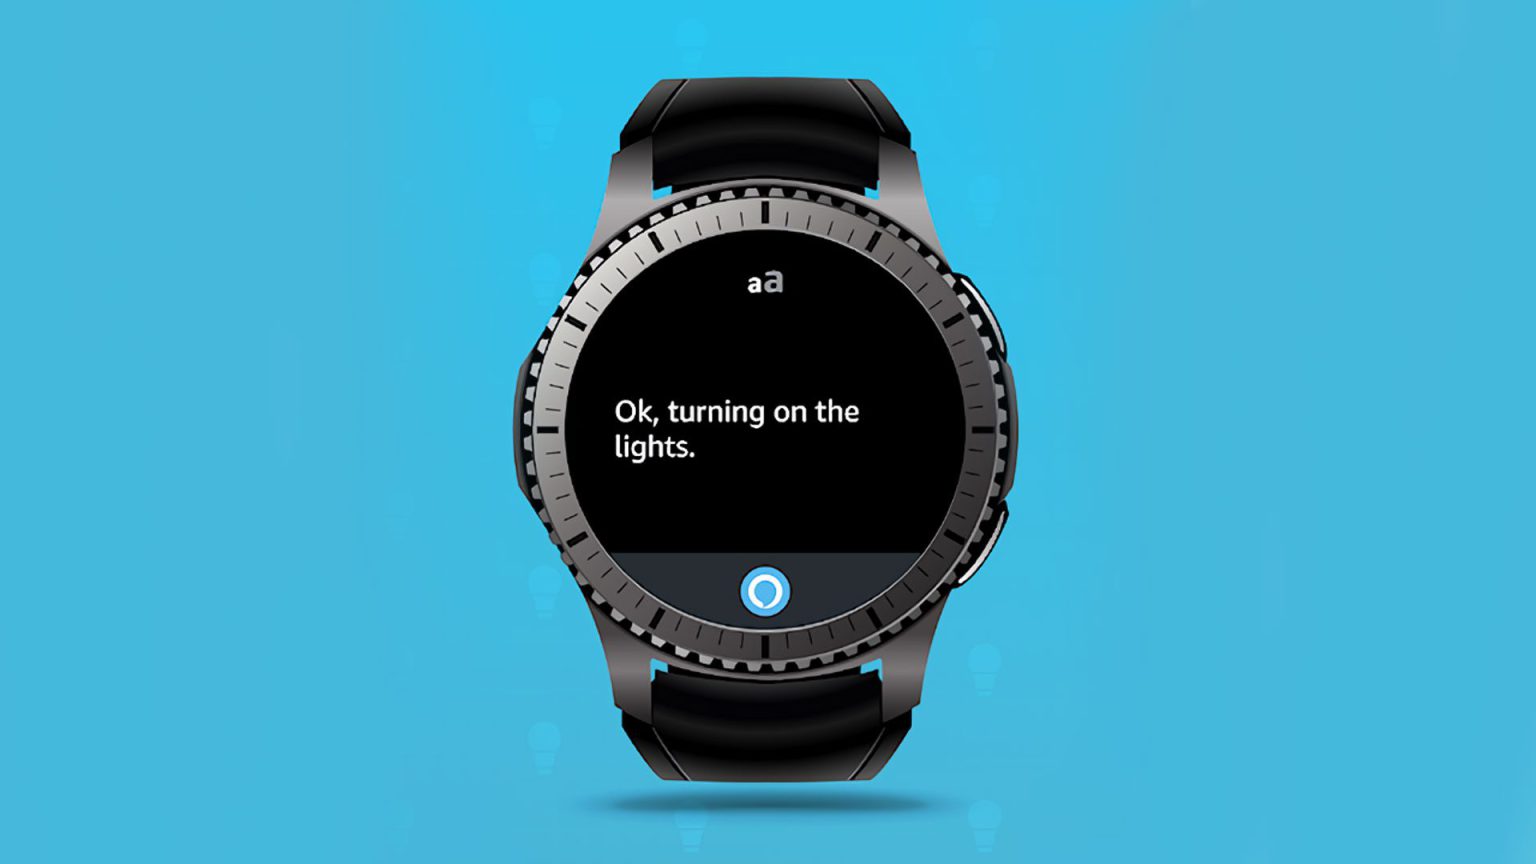 Amazon Mobile lanza finalmente la app de Alexa para relojes con Wear OS, y con ella puedes hacer una gran cantidad de cosas.